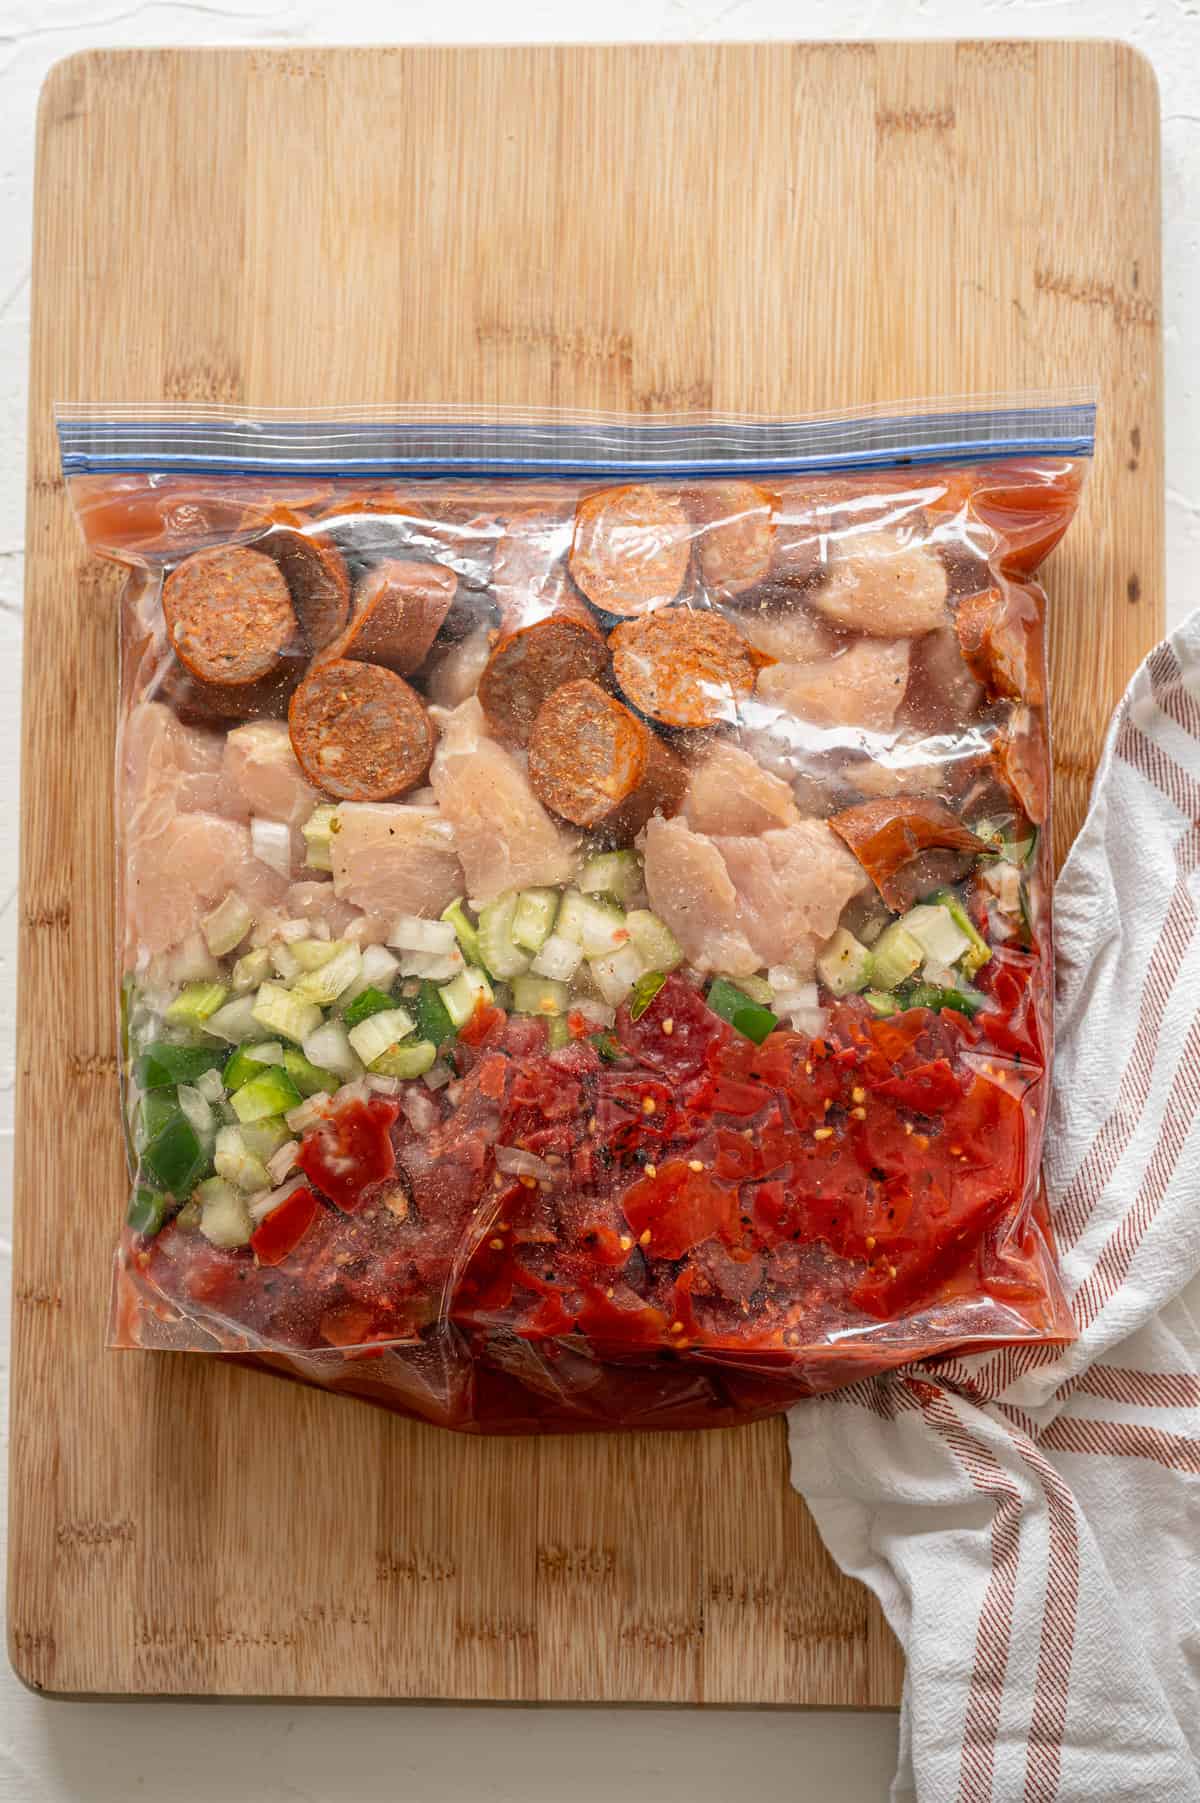 Raw jambalaya ingredients layered in a freezer bag.